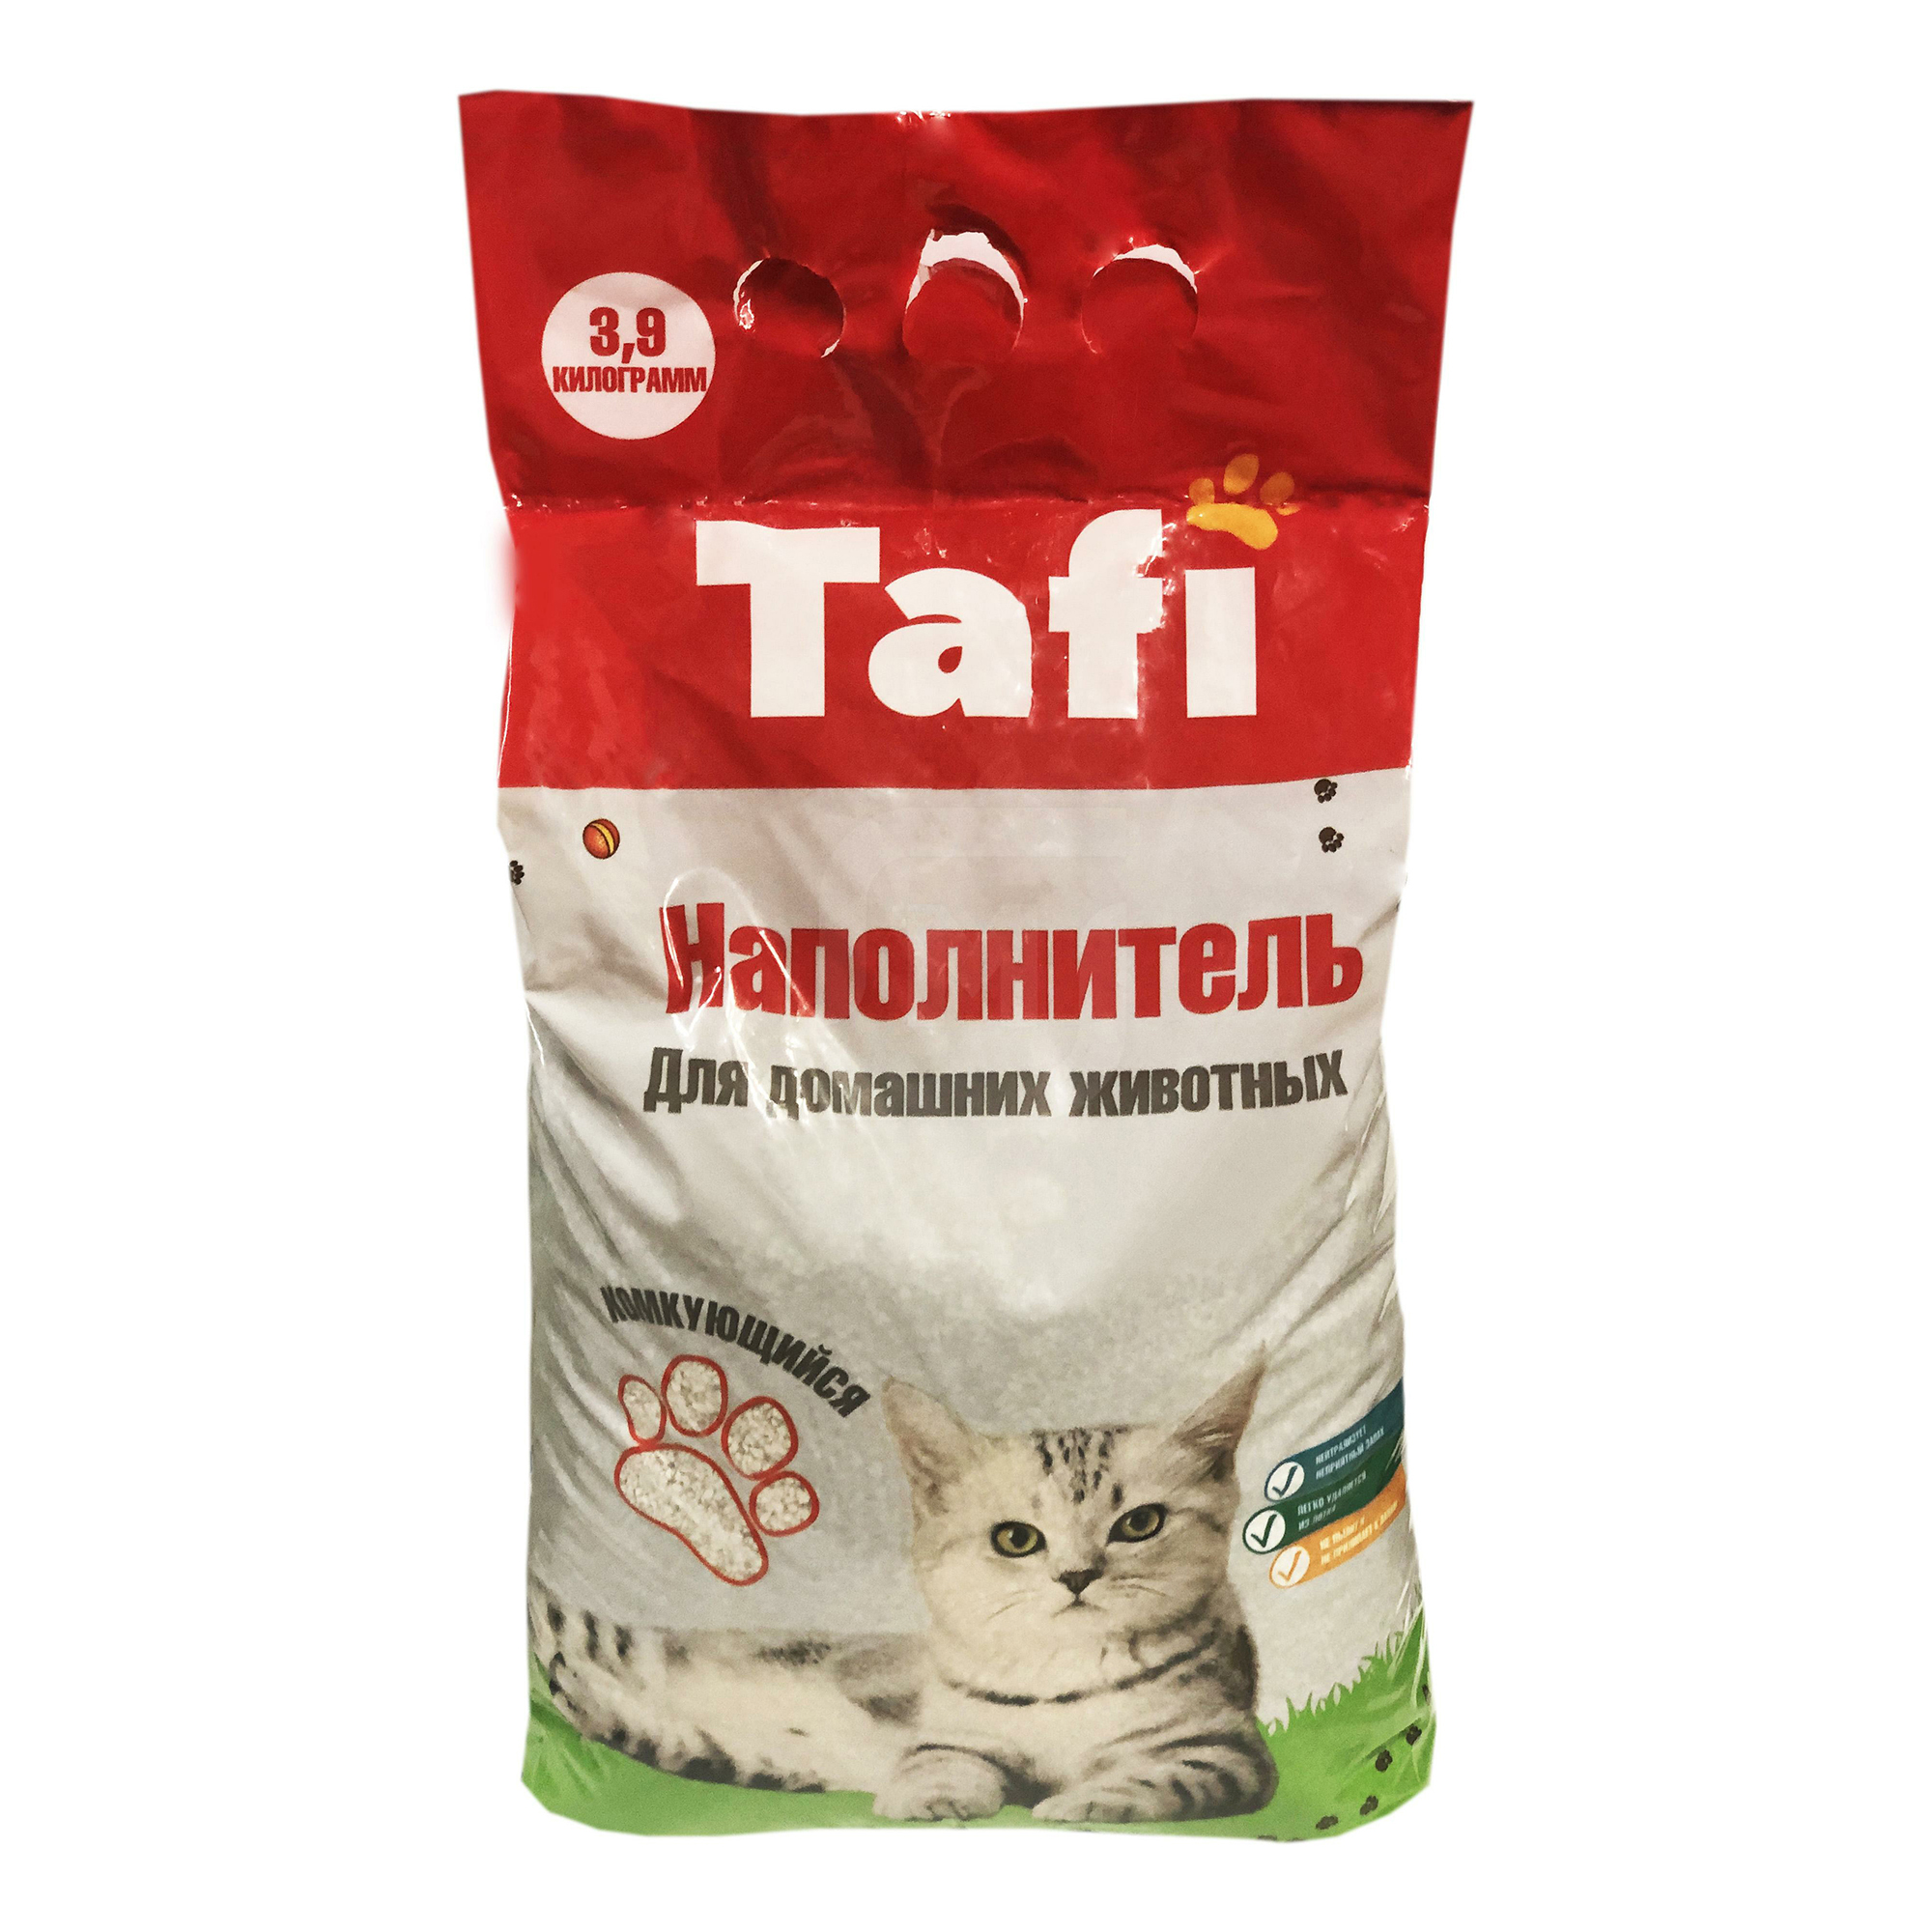 Наполнитель Tafi для кошачьего туалета комкующийся 3,9 кг